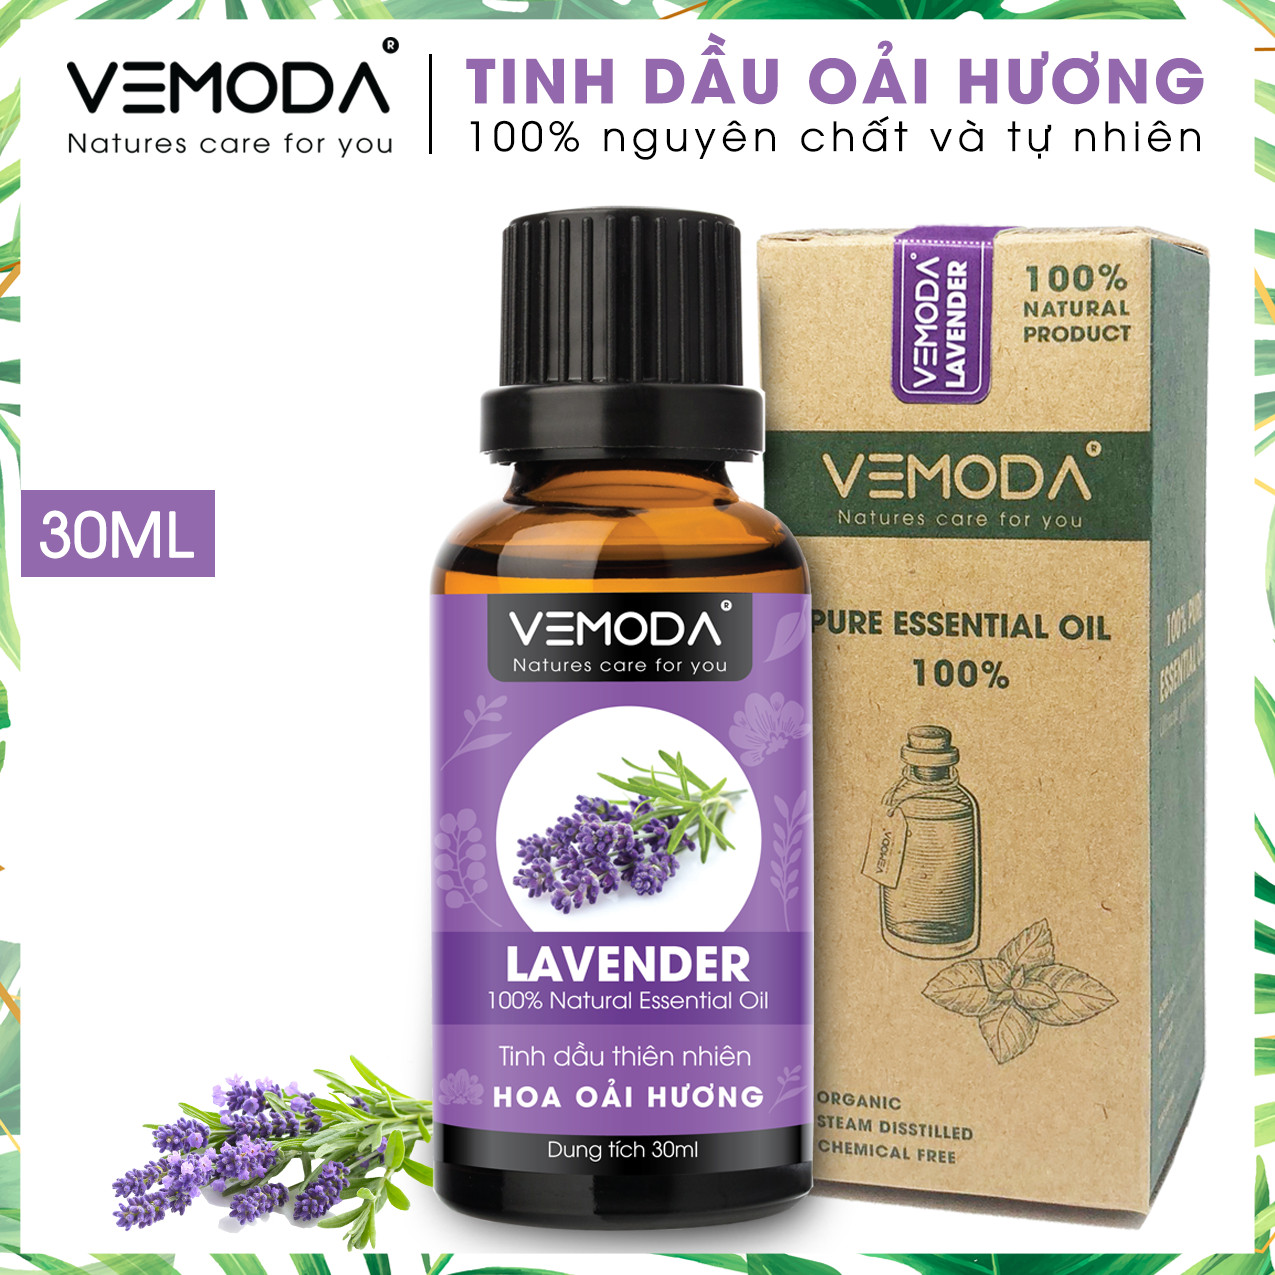 Hình ảnh Tinh dầu Oải hương cao cấp. Lavender Essential Oil. Tinh dầu xông phòng giúp thư giãn, giảm căng thẳng, khử mùi, nâng cao chất lượng giấc ngủ. Tinh dầu thơm phòng cao cấp Vemoda